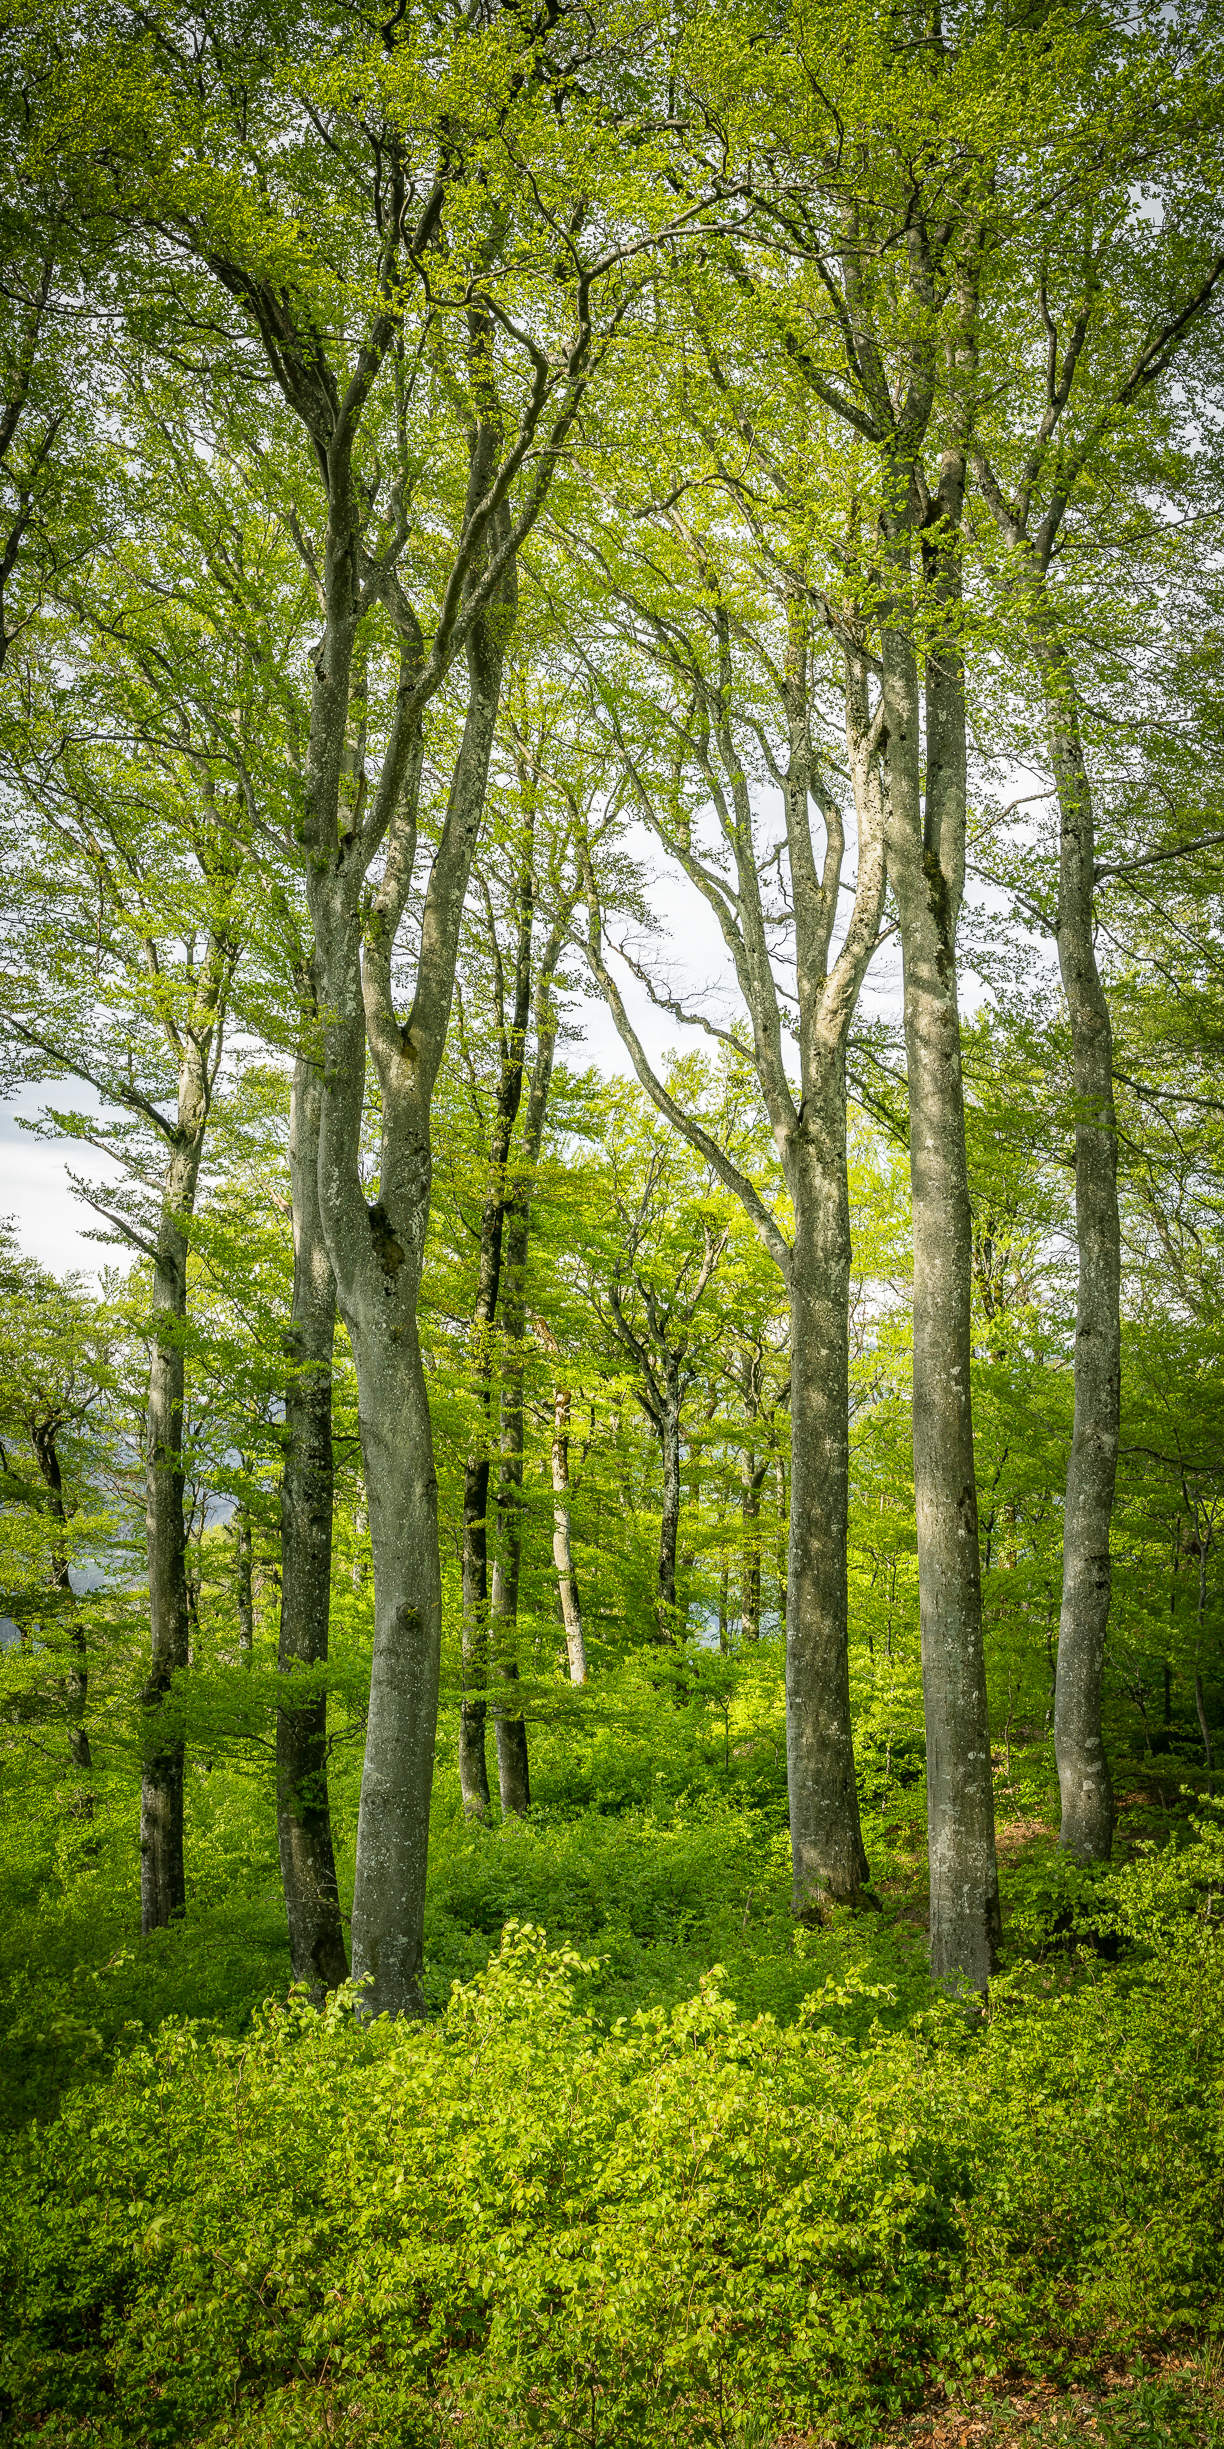 Der Wald erwacht - So frisch und satt das Grün der treibenden Buchen
Pano 2:1